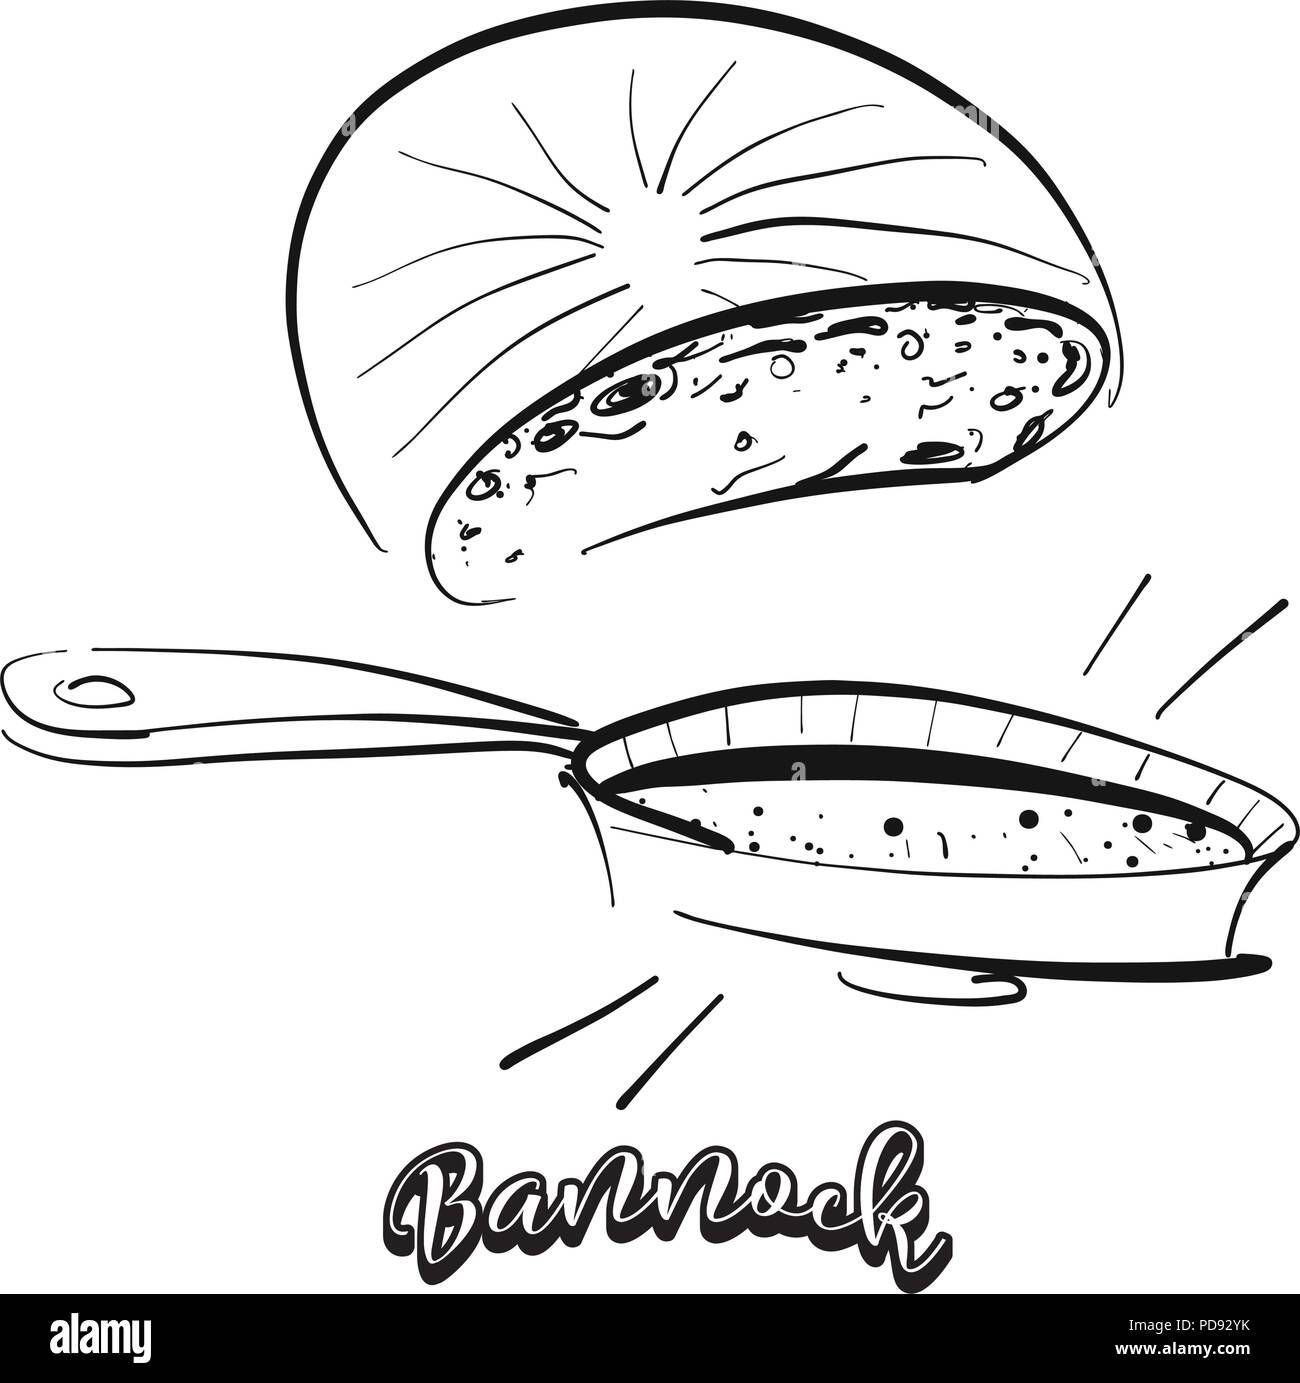 Hand gezeichnete Skizze von Bannock Brot. Vektor Zeichnung von Fladenbrot Essen, in der Regel in Großbritannien, Schottland bekannt. Brot Abbildung Serie. Stock Vektor